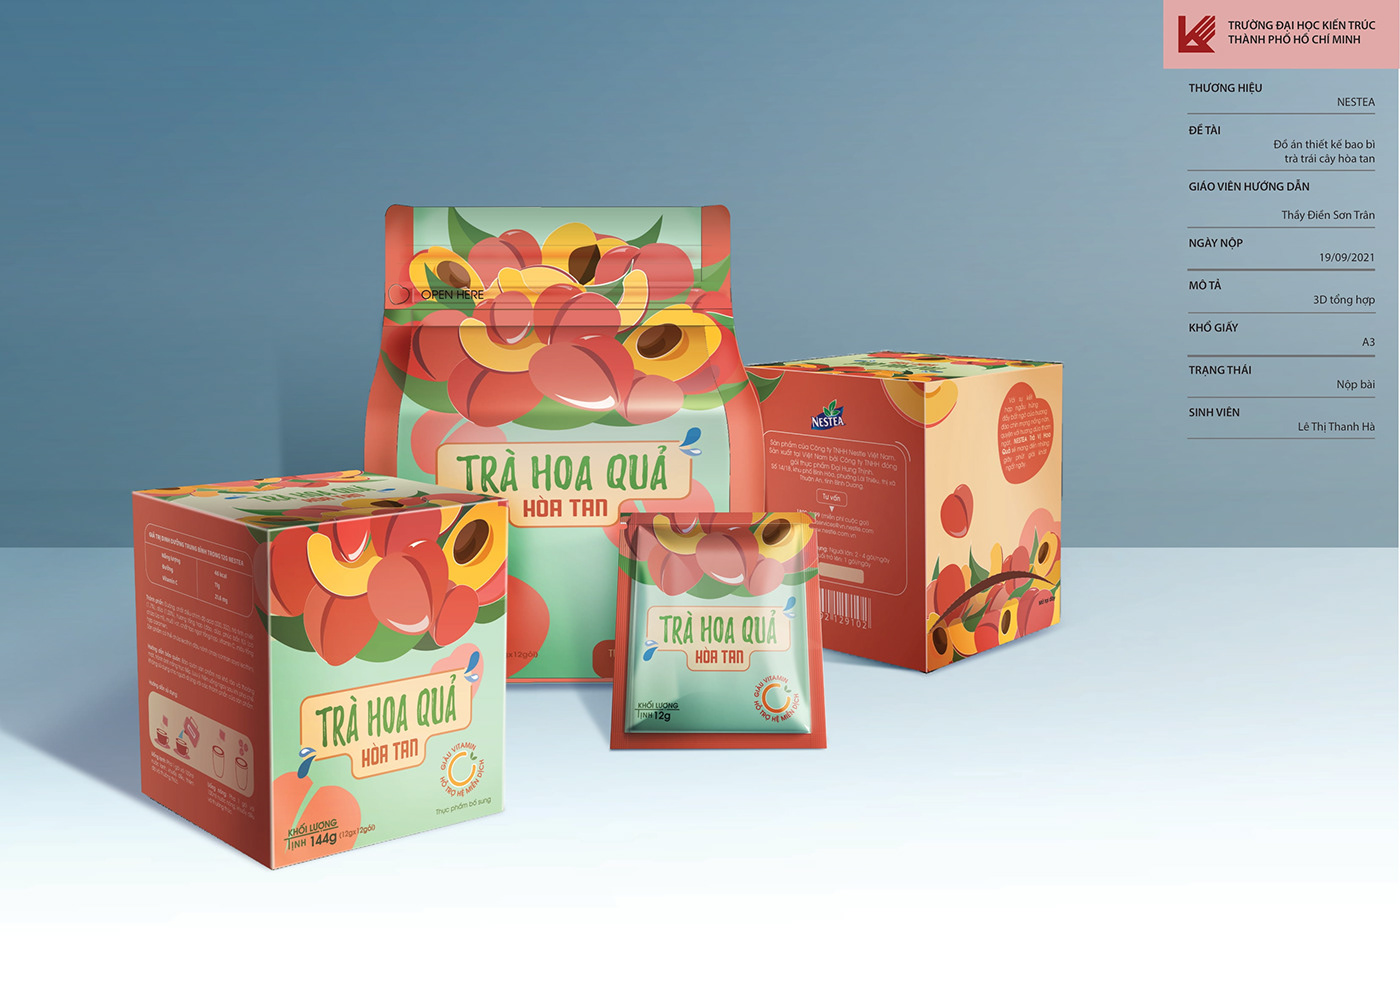 Bao bì bao bì sản phẩm bao bì trà Packaging packaging design product teapackage teapackaging